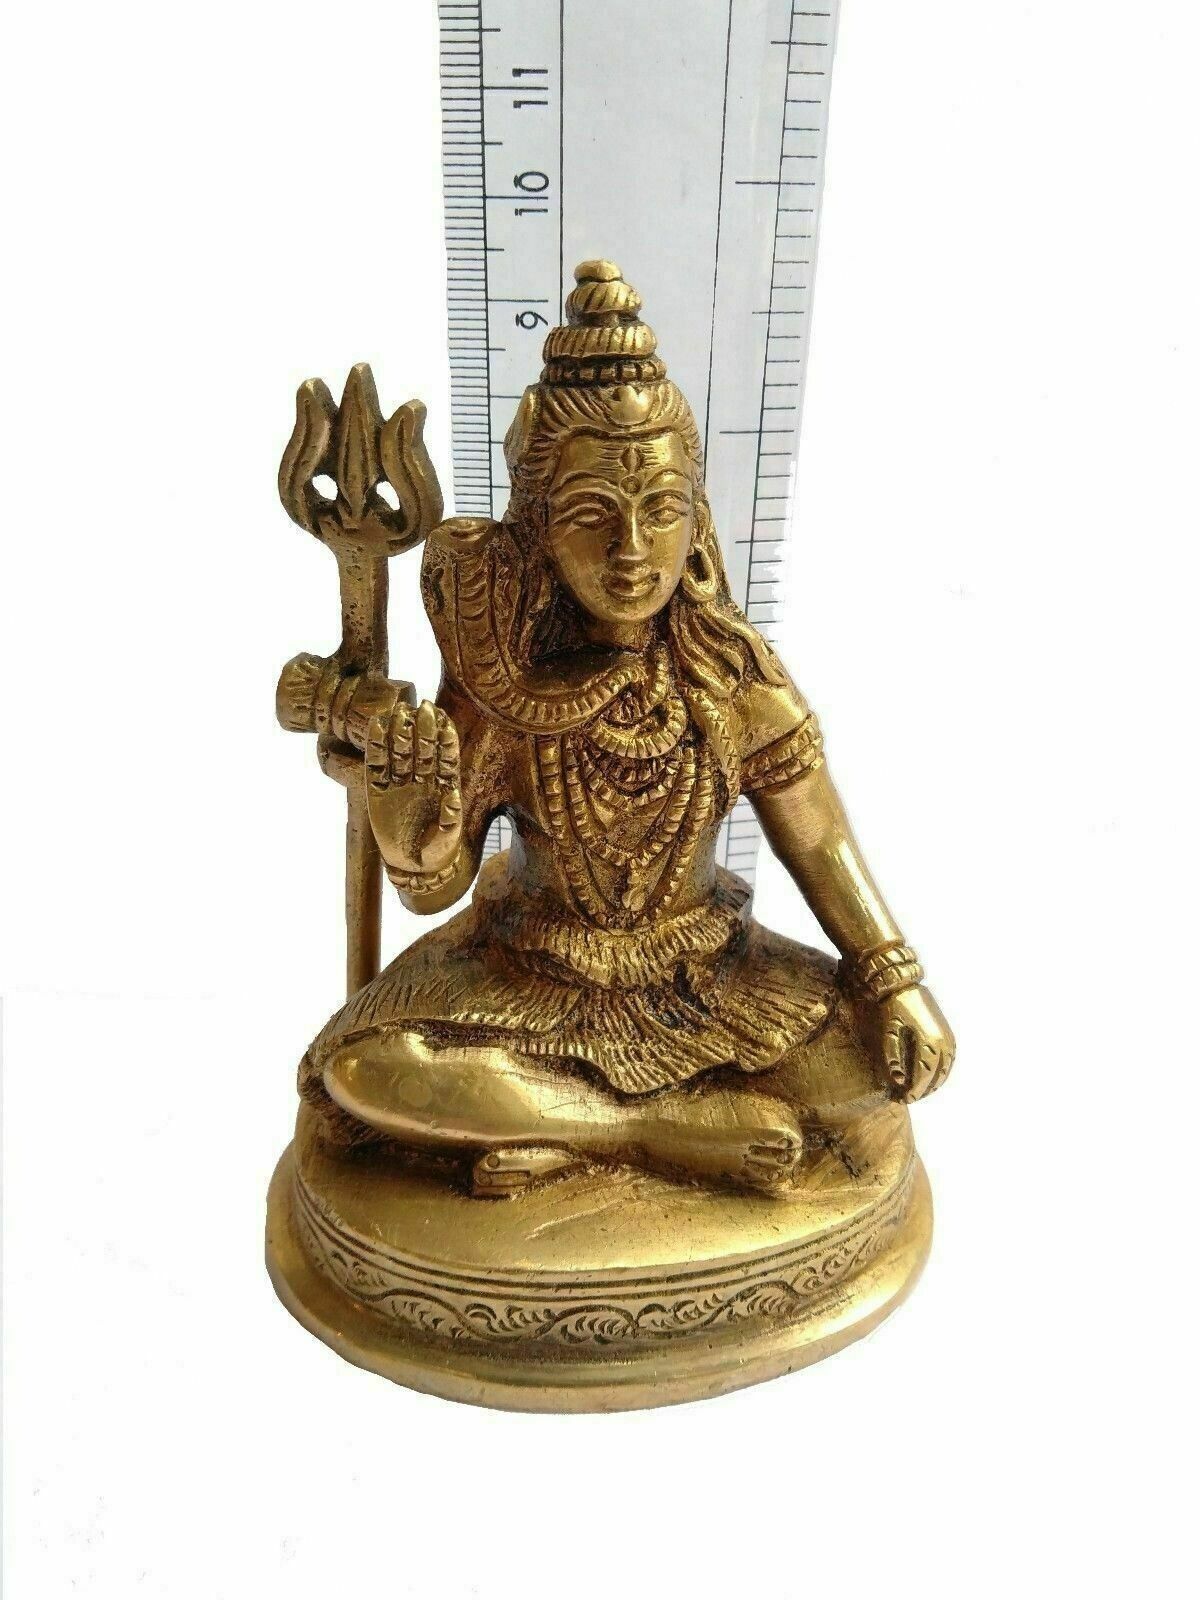 Shiva Lord Brass Statue Hindu God Idol Figurine Figure Vintage